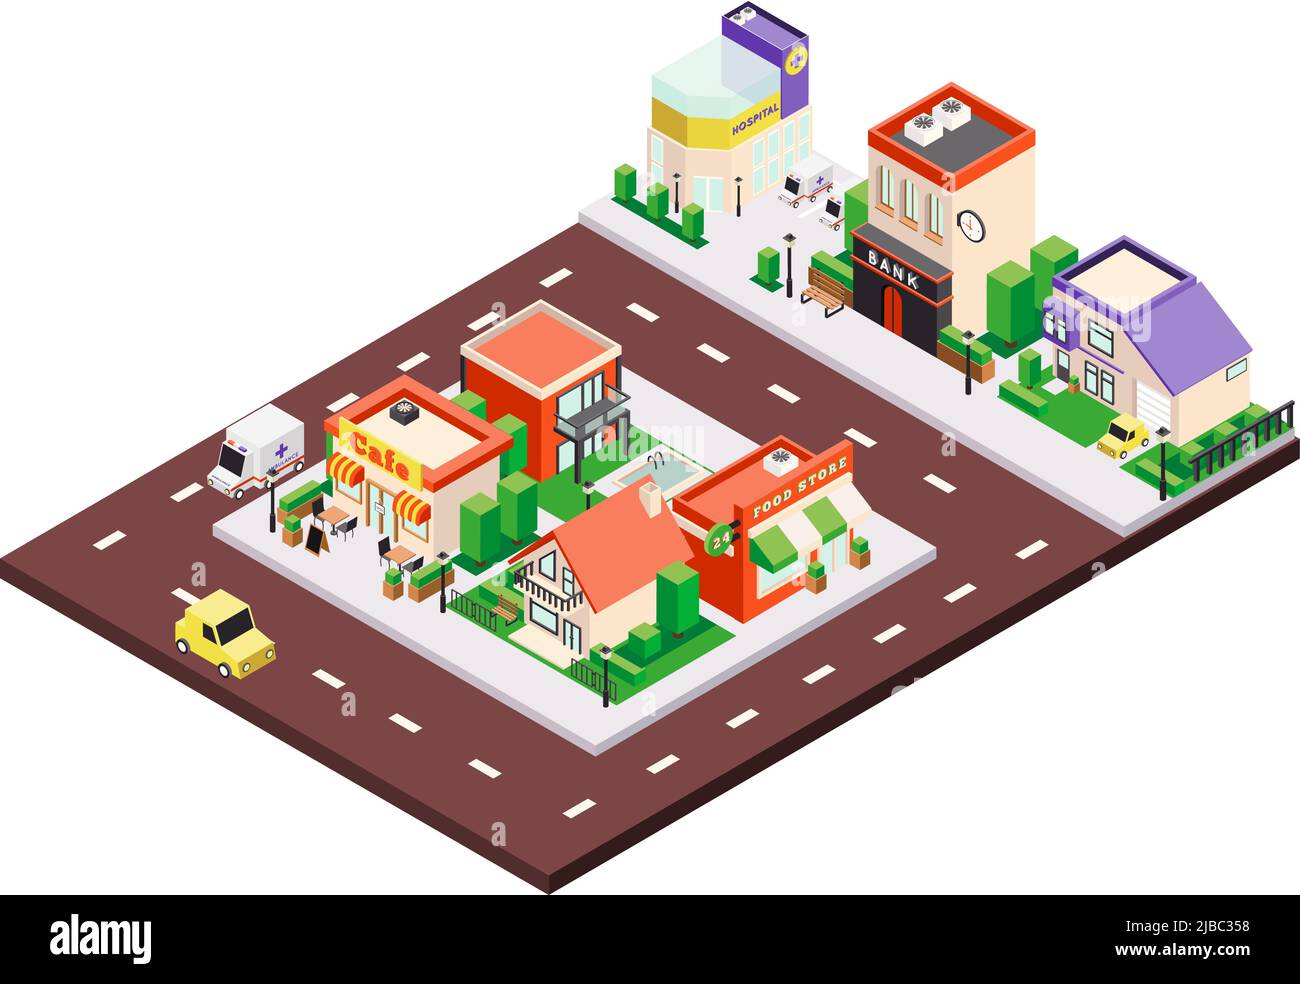 Isometrische Stadtbauten Komposition mit bunten städtischen und privaten Häusern mit Schildern und Autos auf Straße Vektor-Illustration Stock Vektor